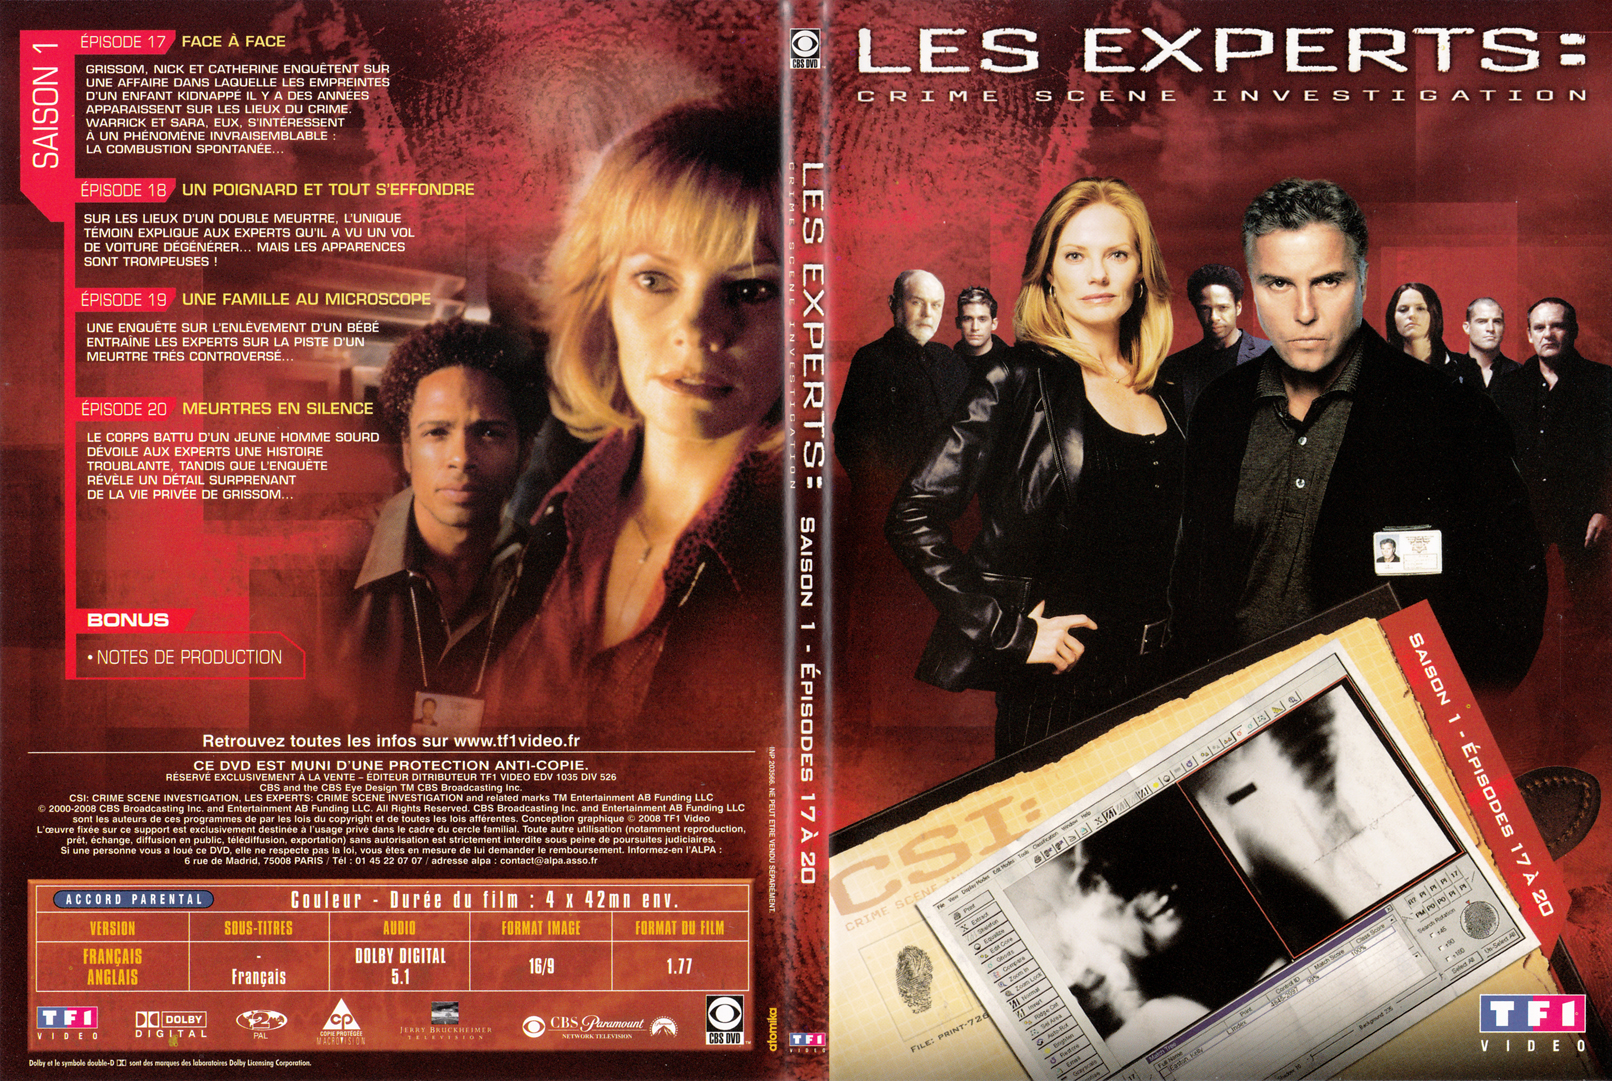 Jaquette DVD Les experts las vegas Saison 01 DVD 05 - SLIM